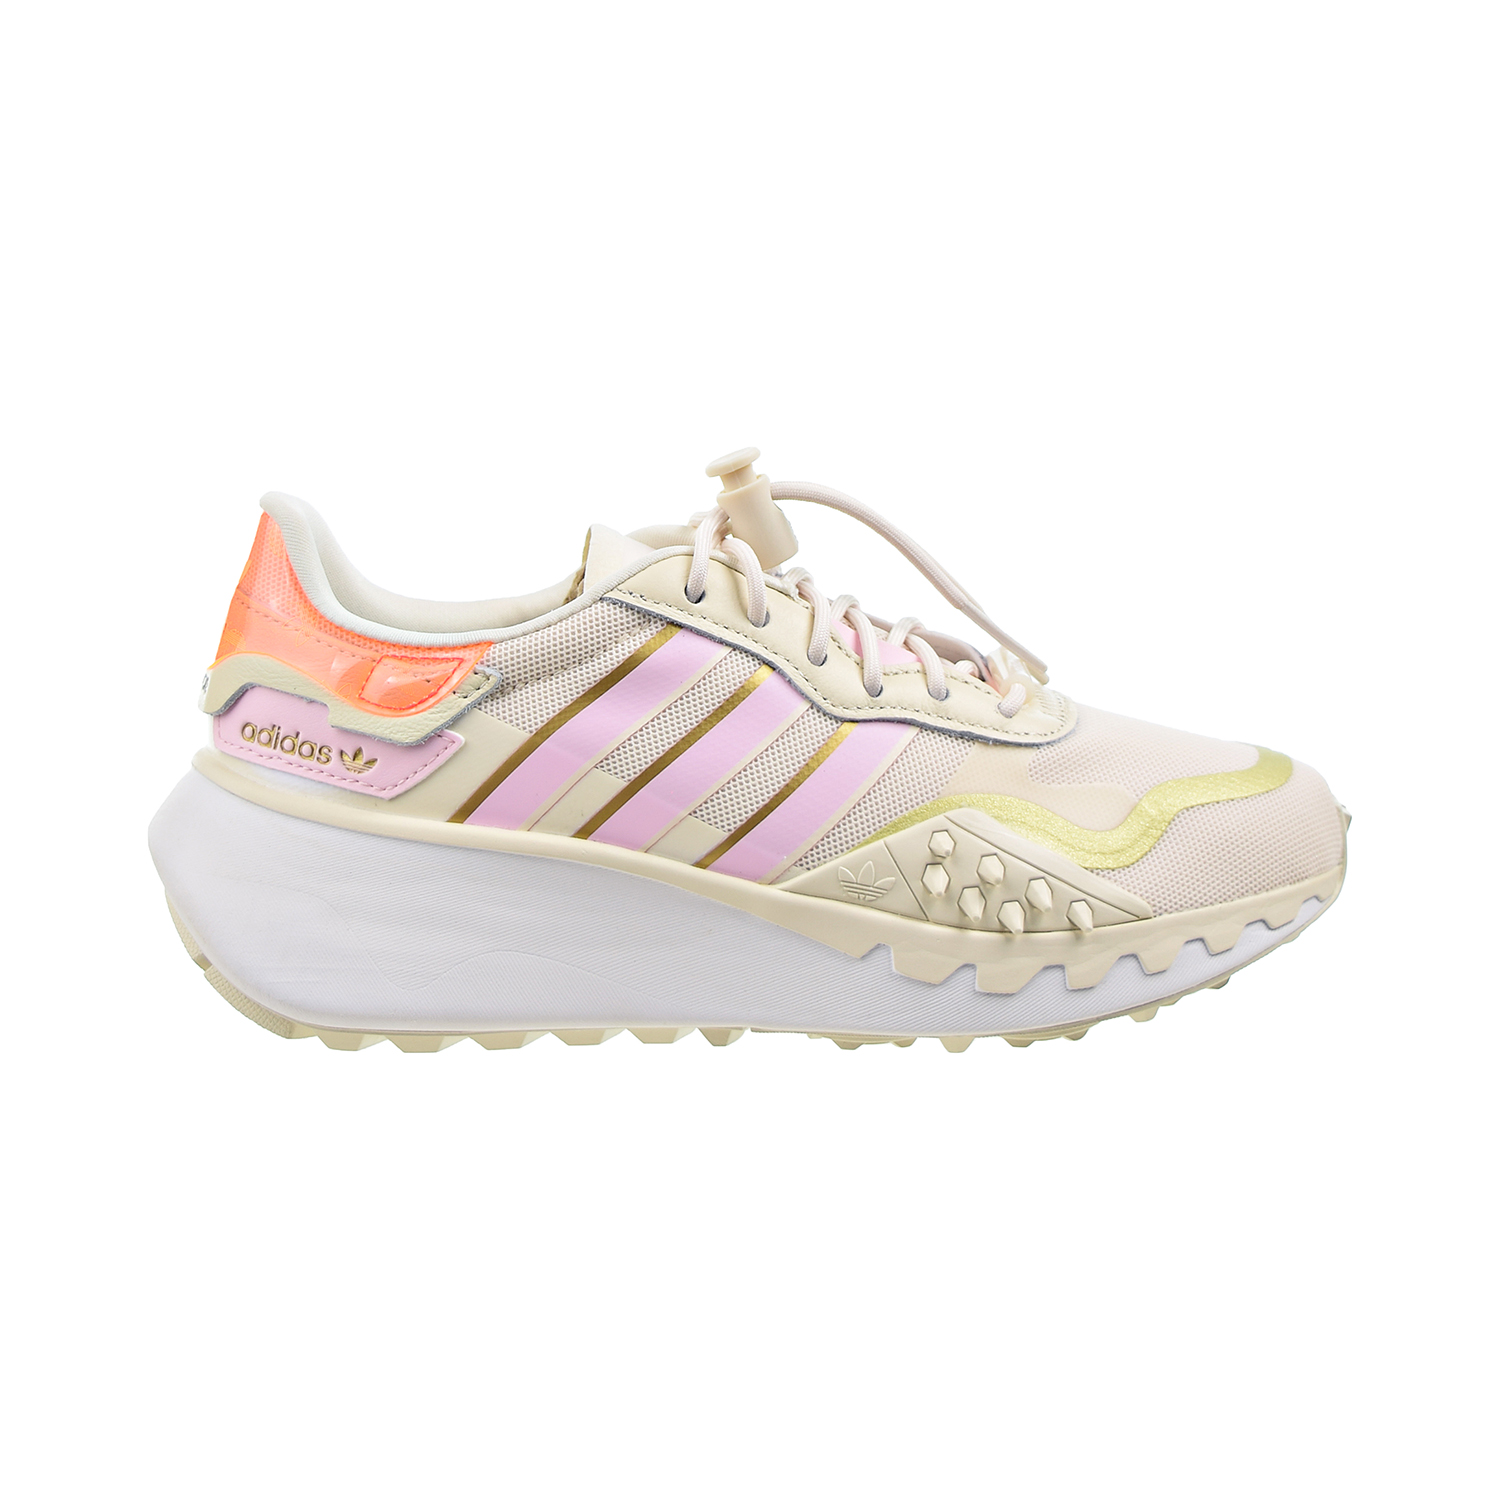 Adidas Choigo Women's Shoes Wonder White-Clear Pink-Cloud White h00667